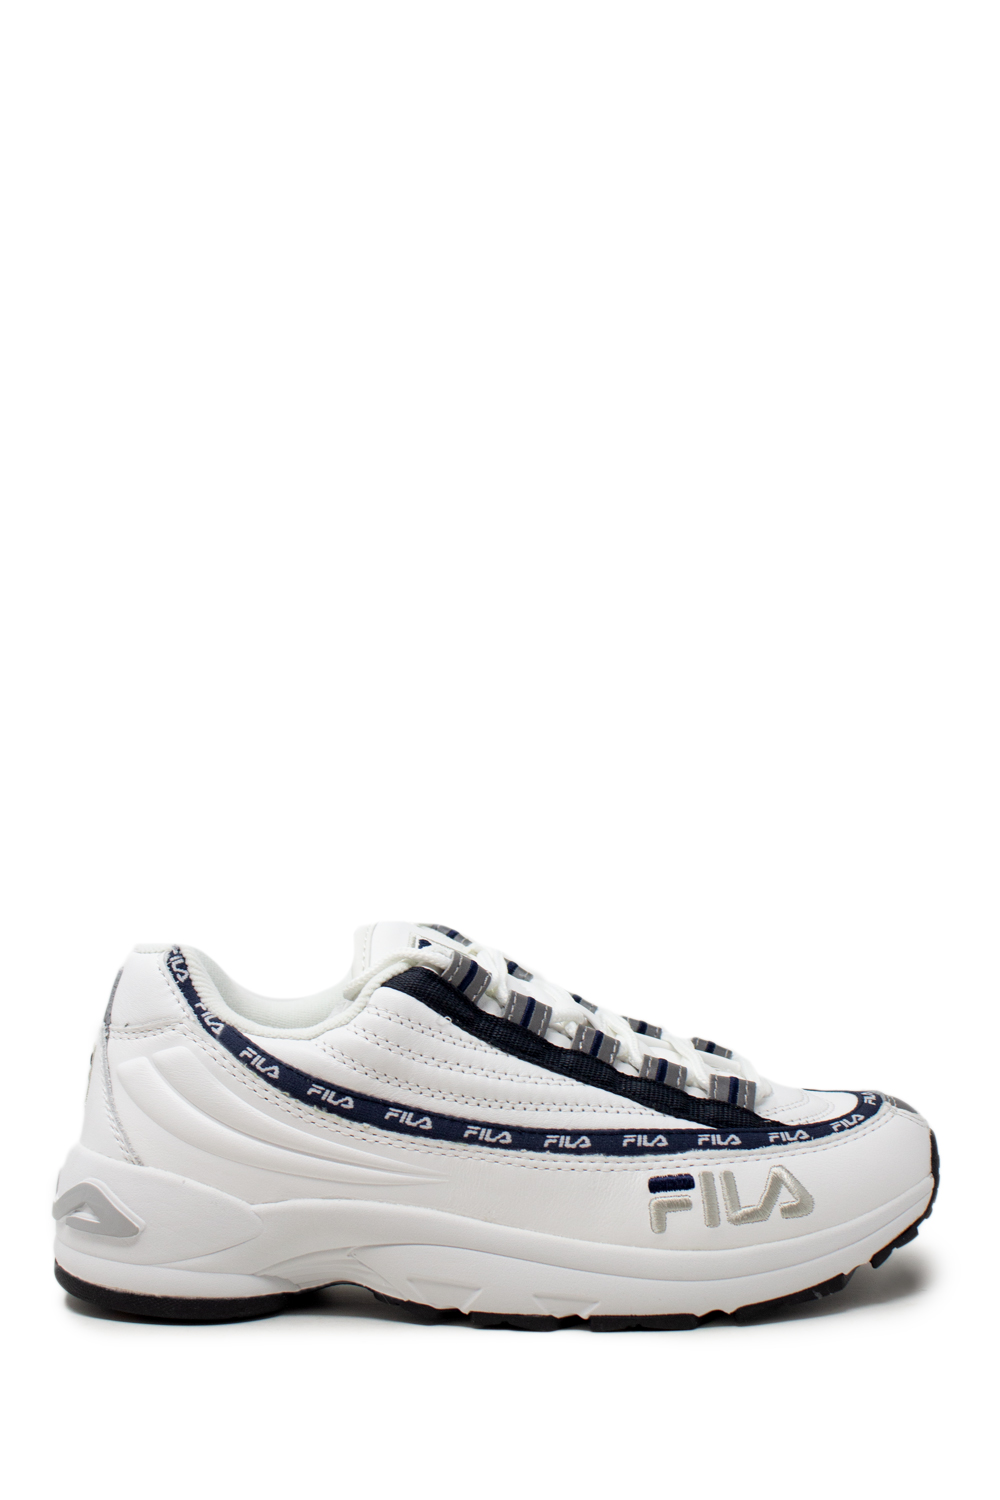 Fila Sneakers DSTR97 L 1010569 - 1